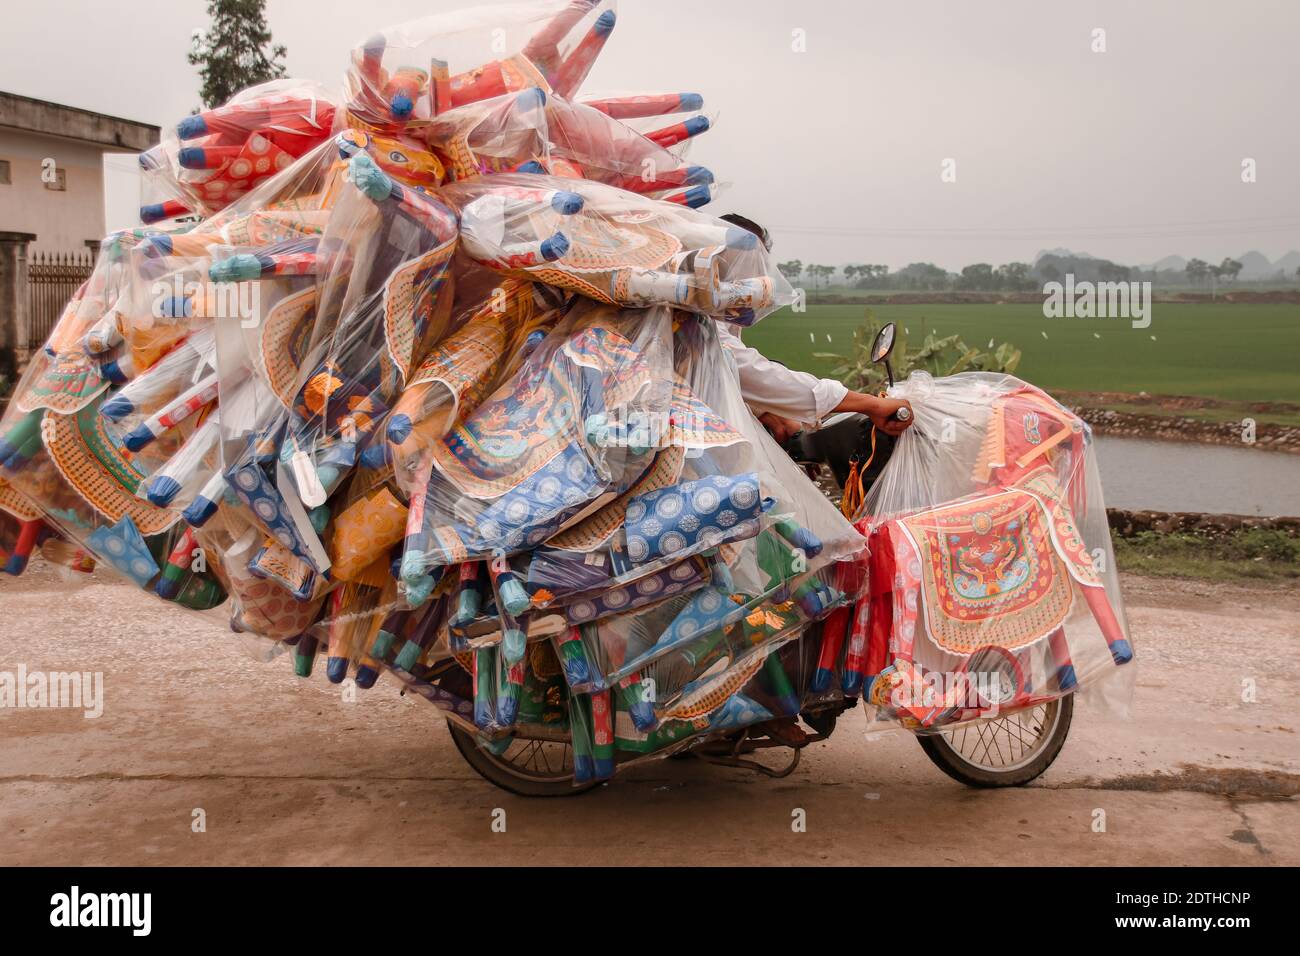 La moto vietnamienne surchargée de cargaison, montre la culture locale et la vie quotidienne dans les pays du Vietnam Banque D'Images